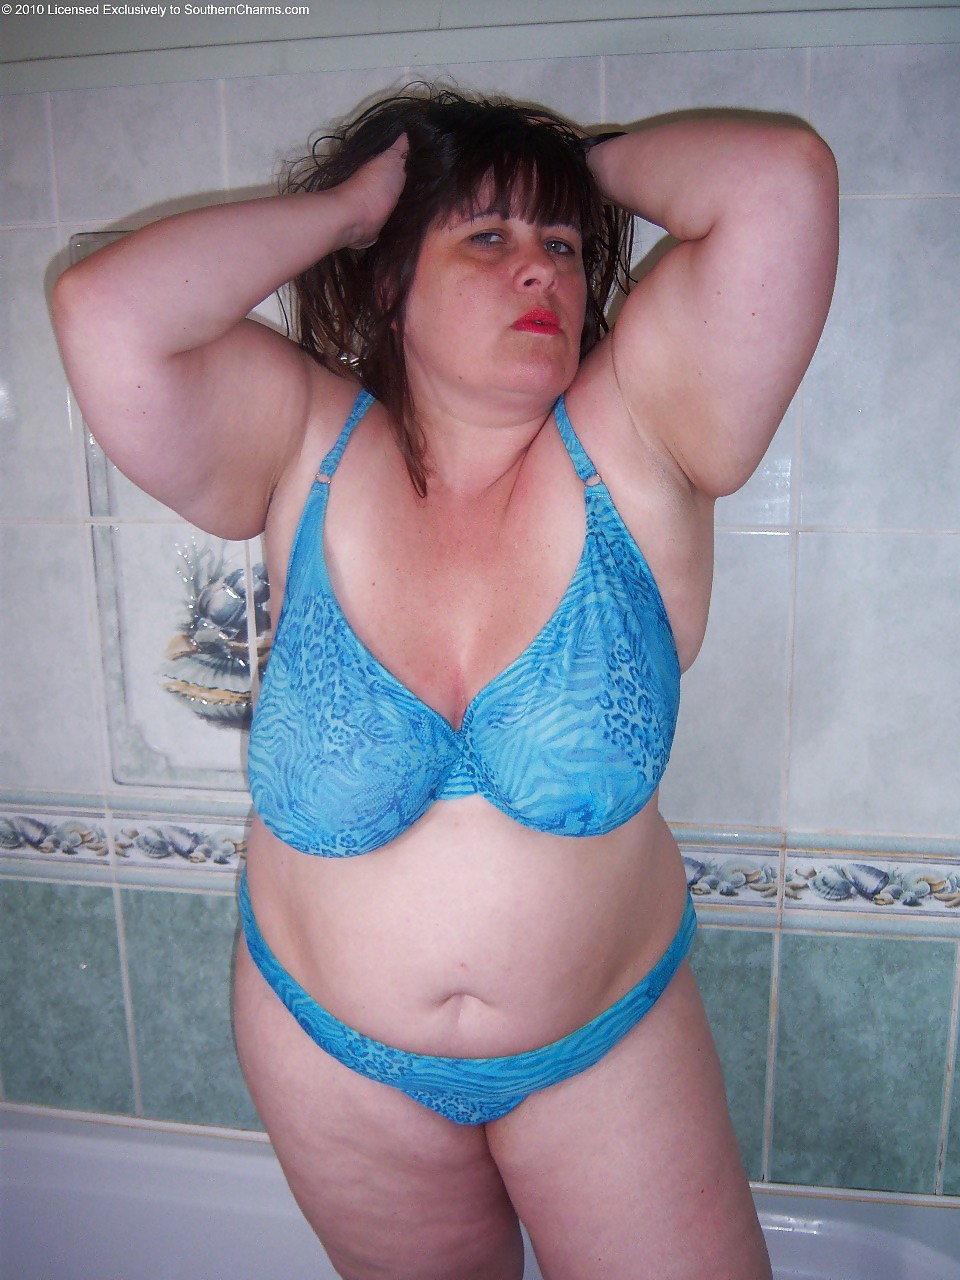 Trajes de baño bikinis sujetadores bbw maduro vestido joven grande enorme - 40
 #11928193